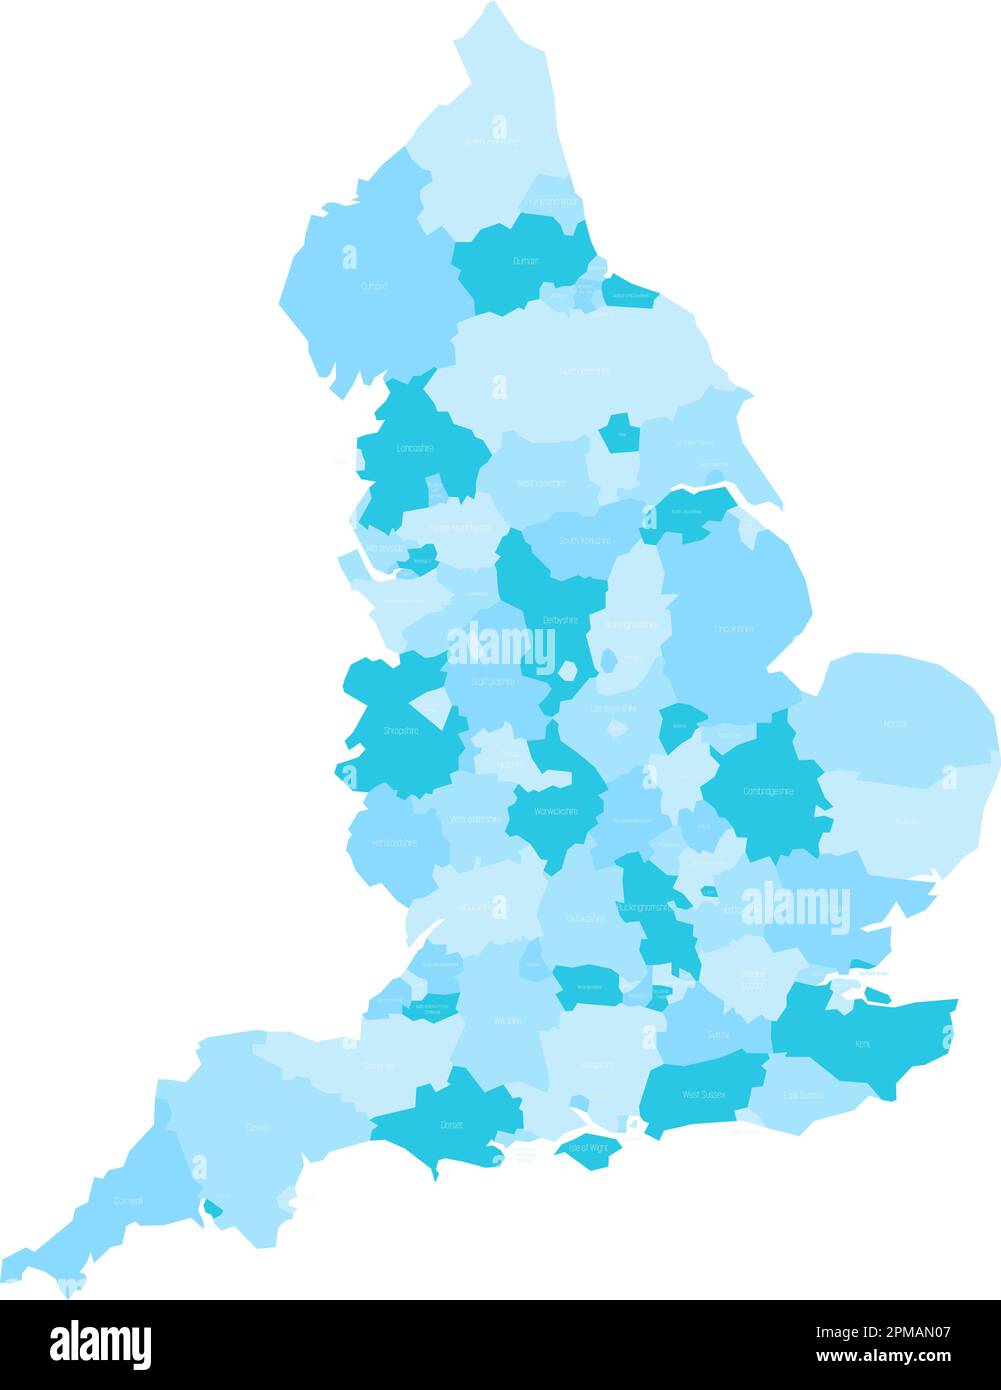 Carte des divisions administratives de l'Angleterre. Comtés métropolitains et non métropolitains et autorités unitaires. Carte vectorielle bleue avec étiquettes. Illustration de Vecteur